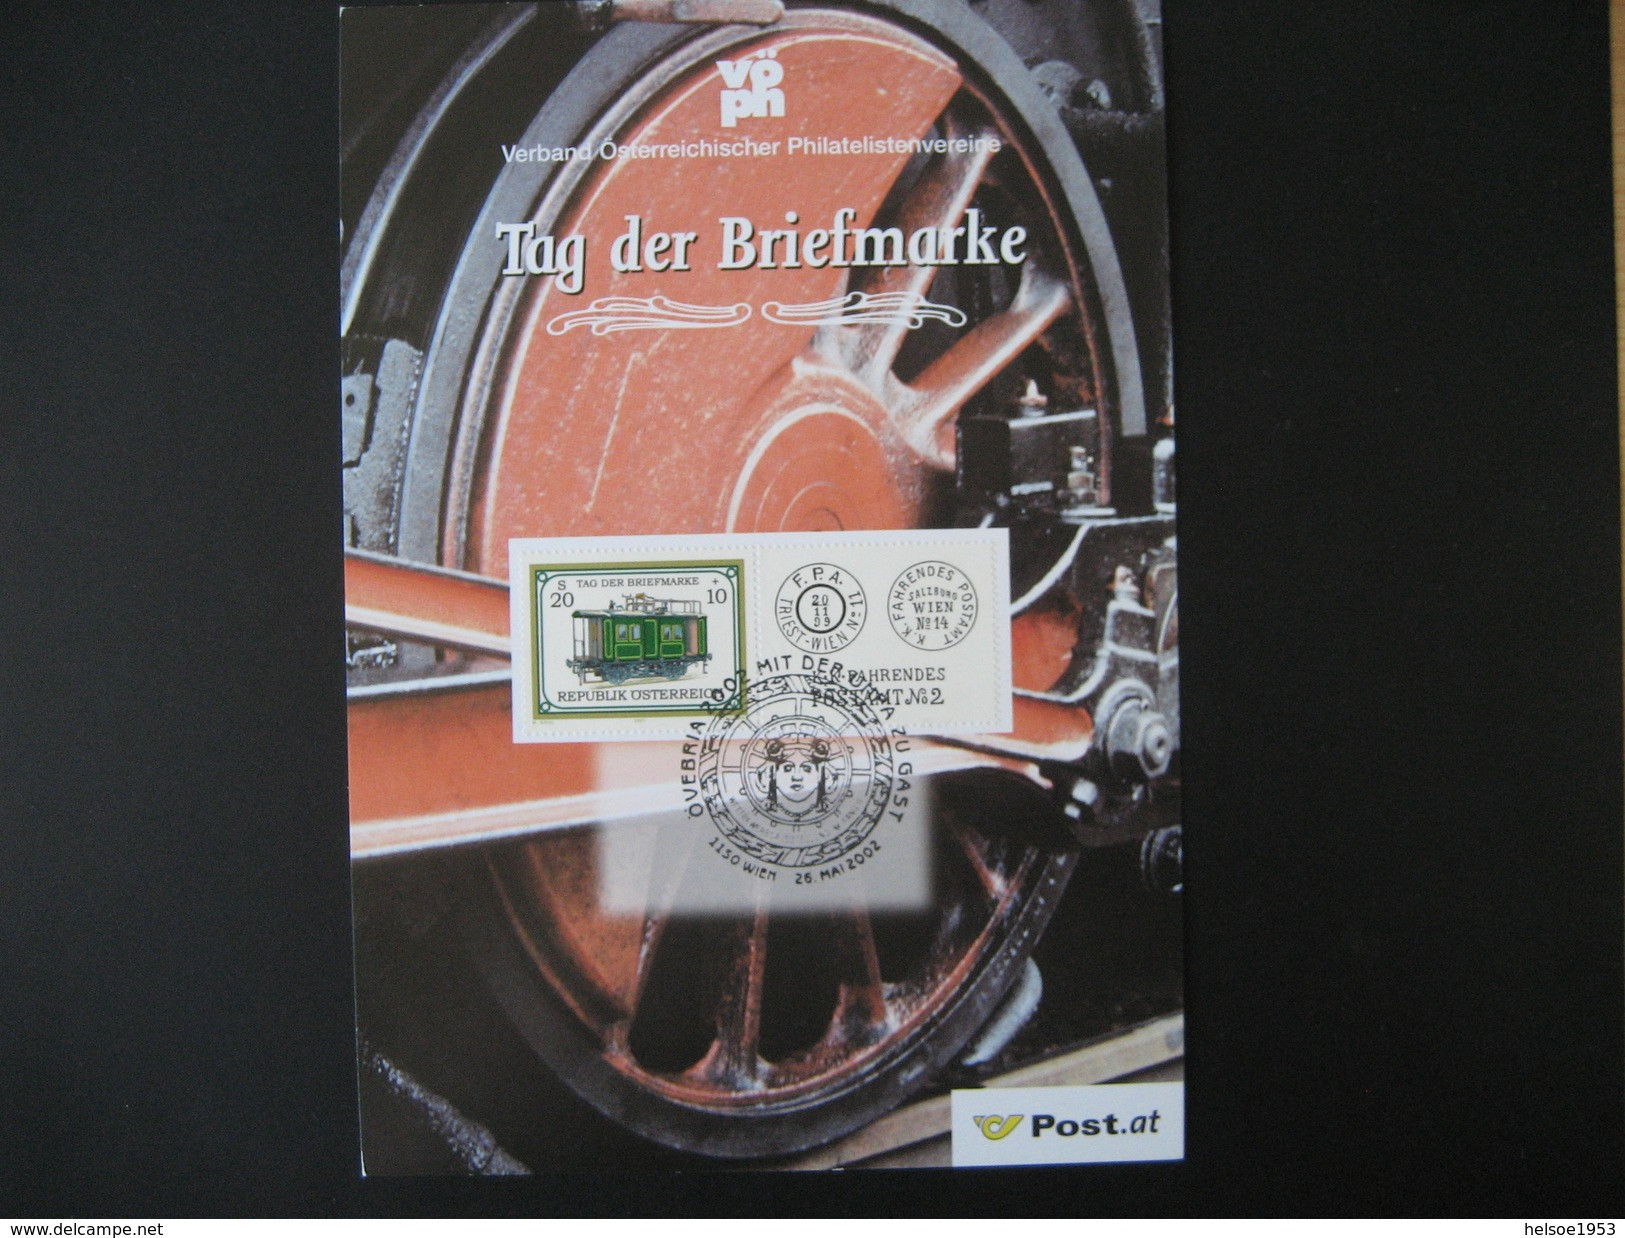 Österreich- VÖPh Jahresgabe 2001 Mit Marke Tag Der Briefmarke 2001 ANK 2379 - Covers & Documents